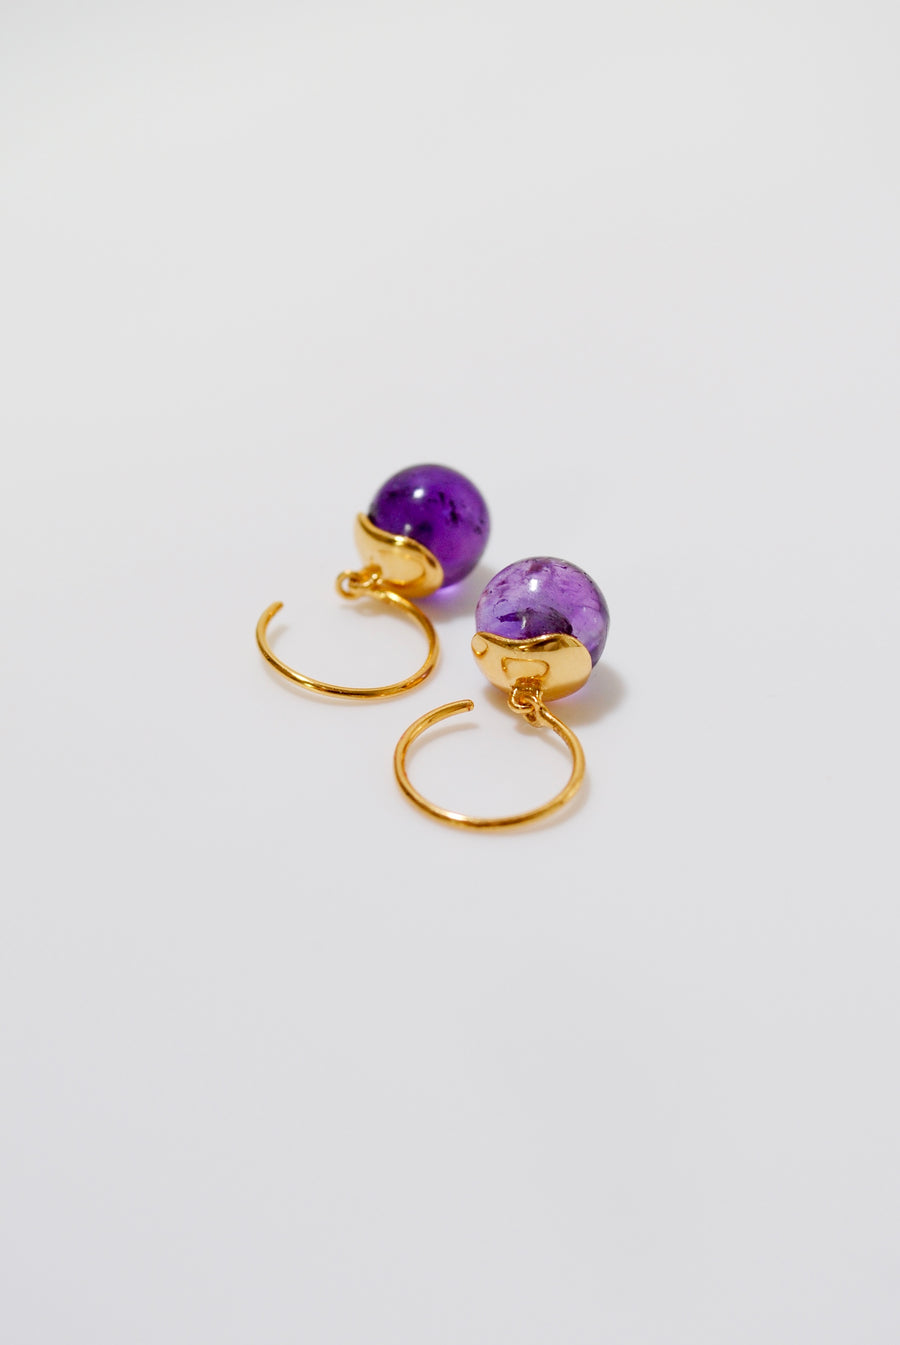 (アメジスト/gold) acorn pierced earring